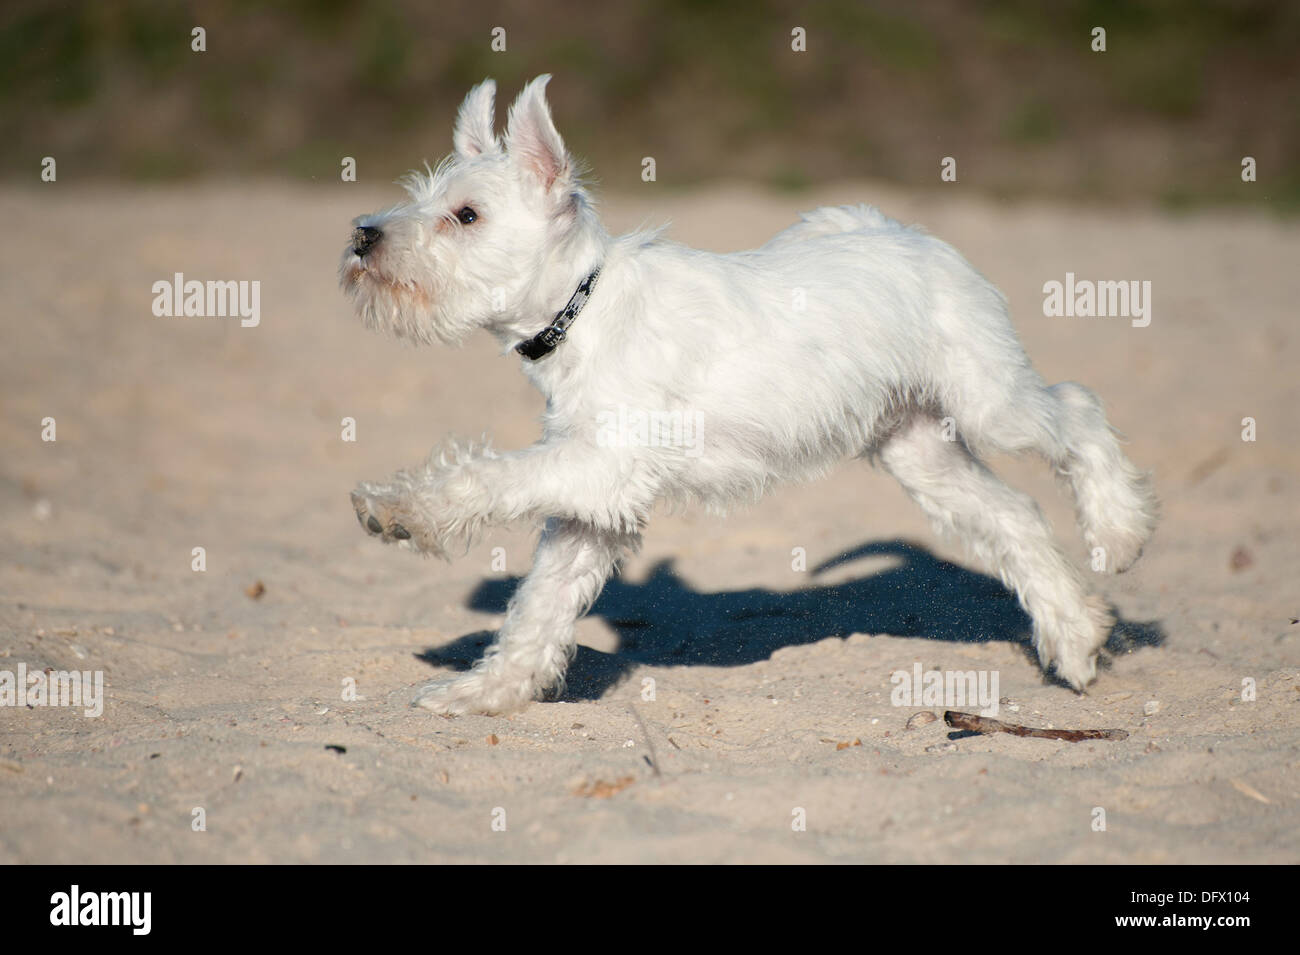 12-semaines-vieux chiot Schnauzer nain tournant dans le sable Banque D'Images